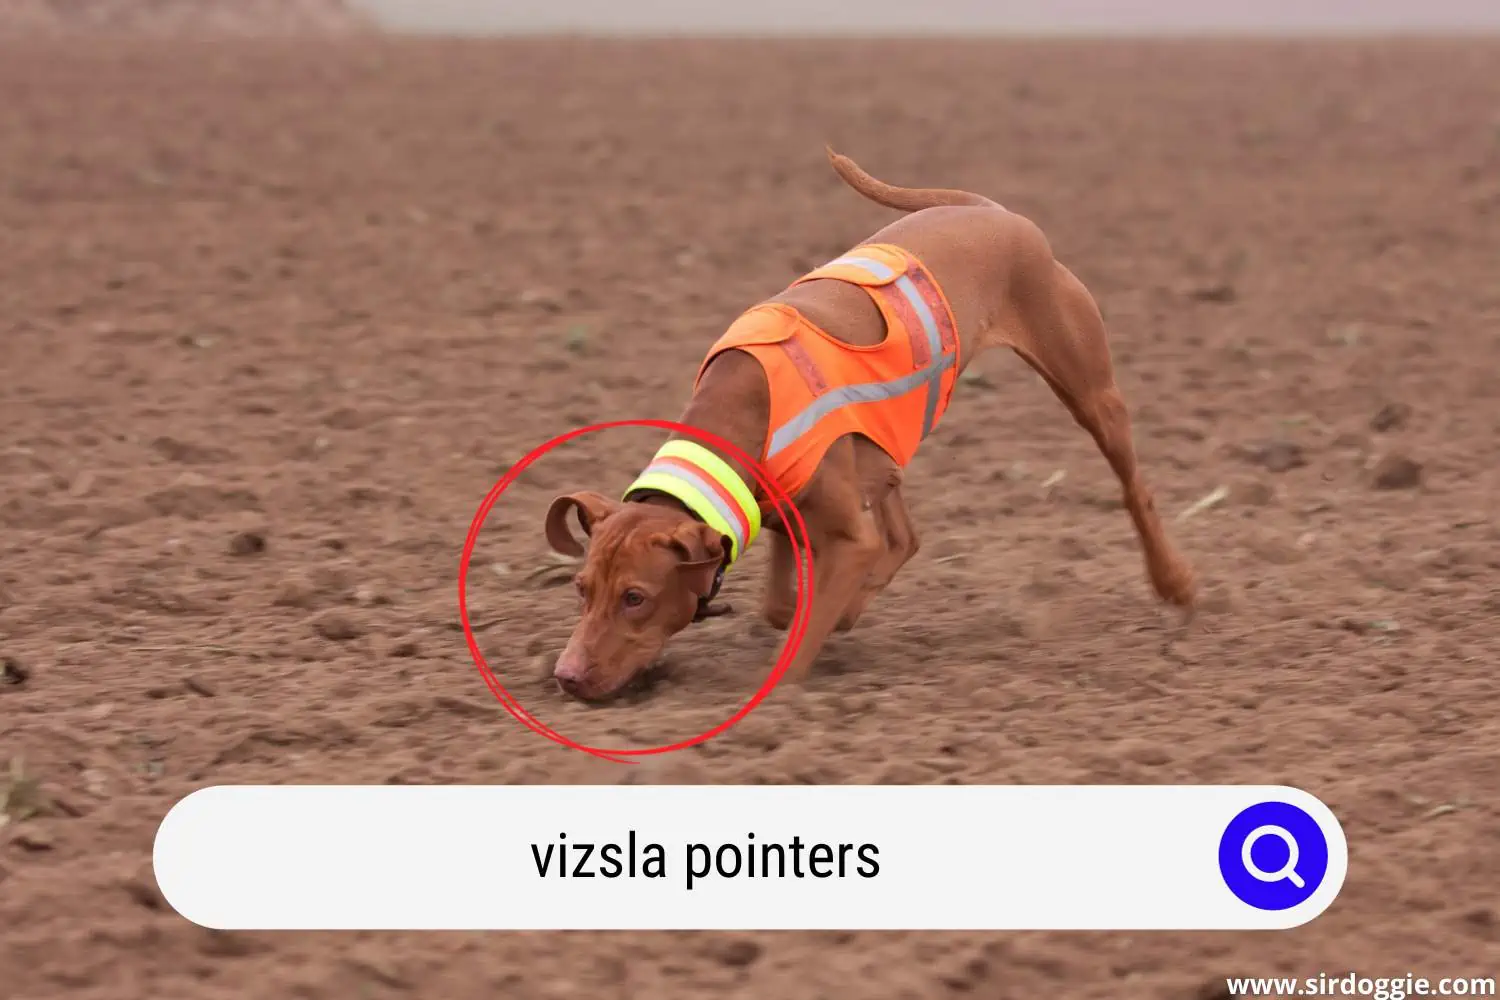 Vizsla dog pointing something on the sand